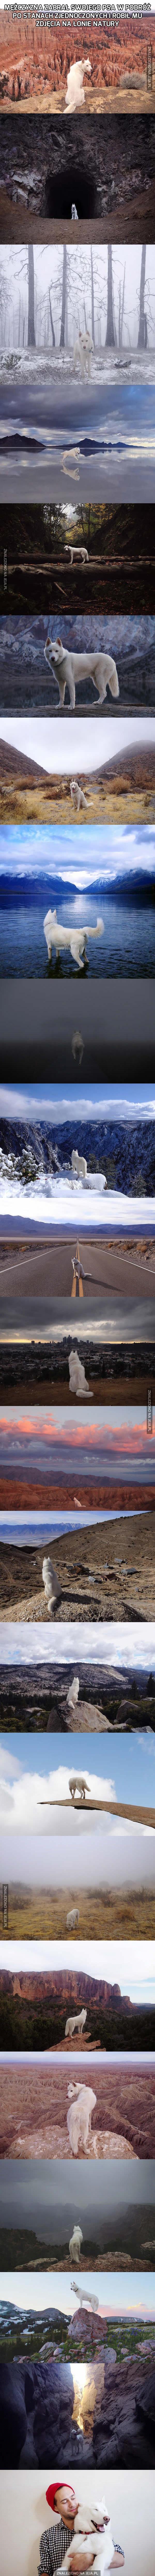 Fotografie psa w pięknych miejscach